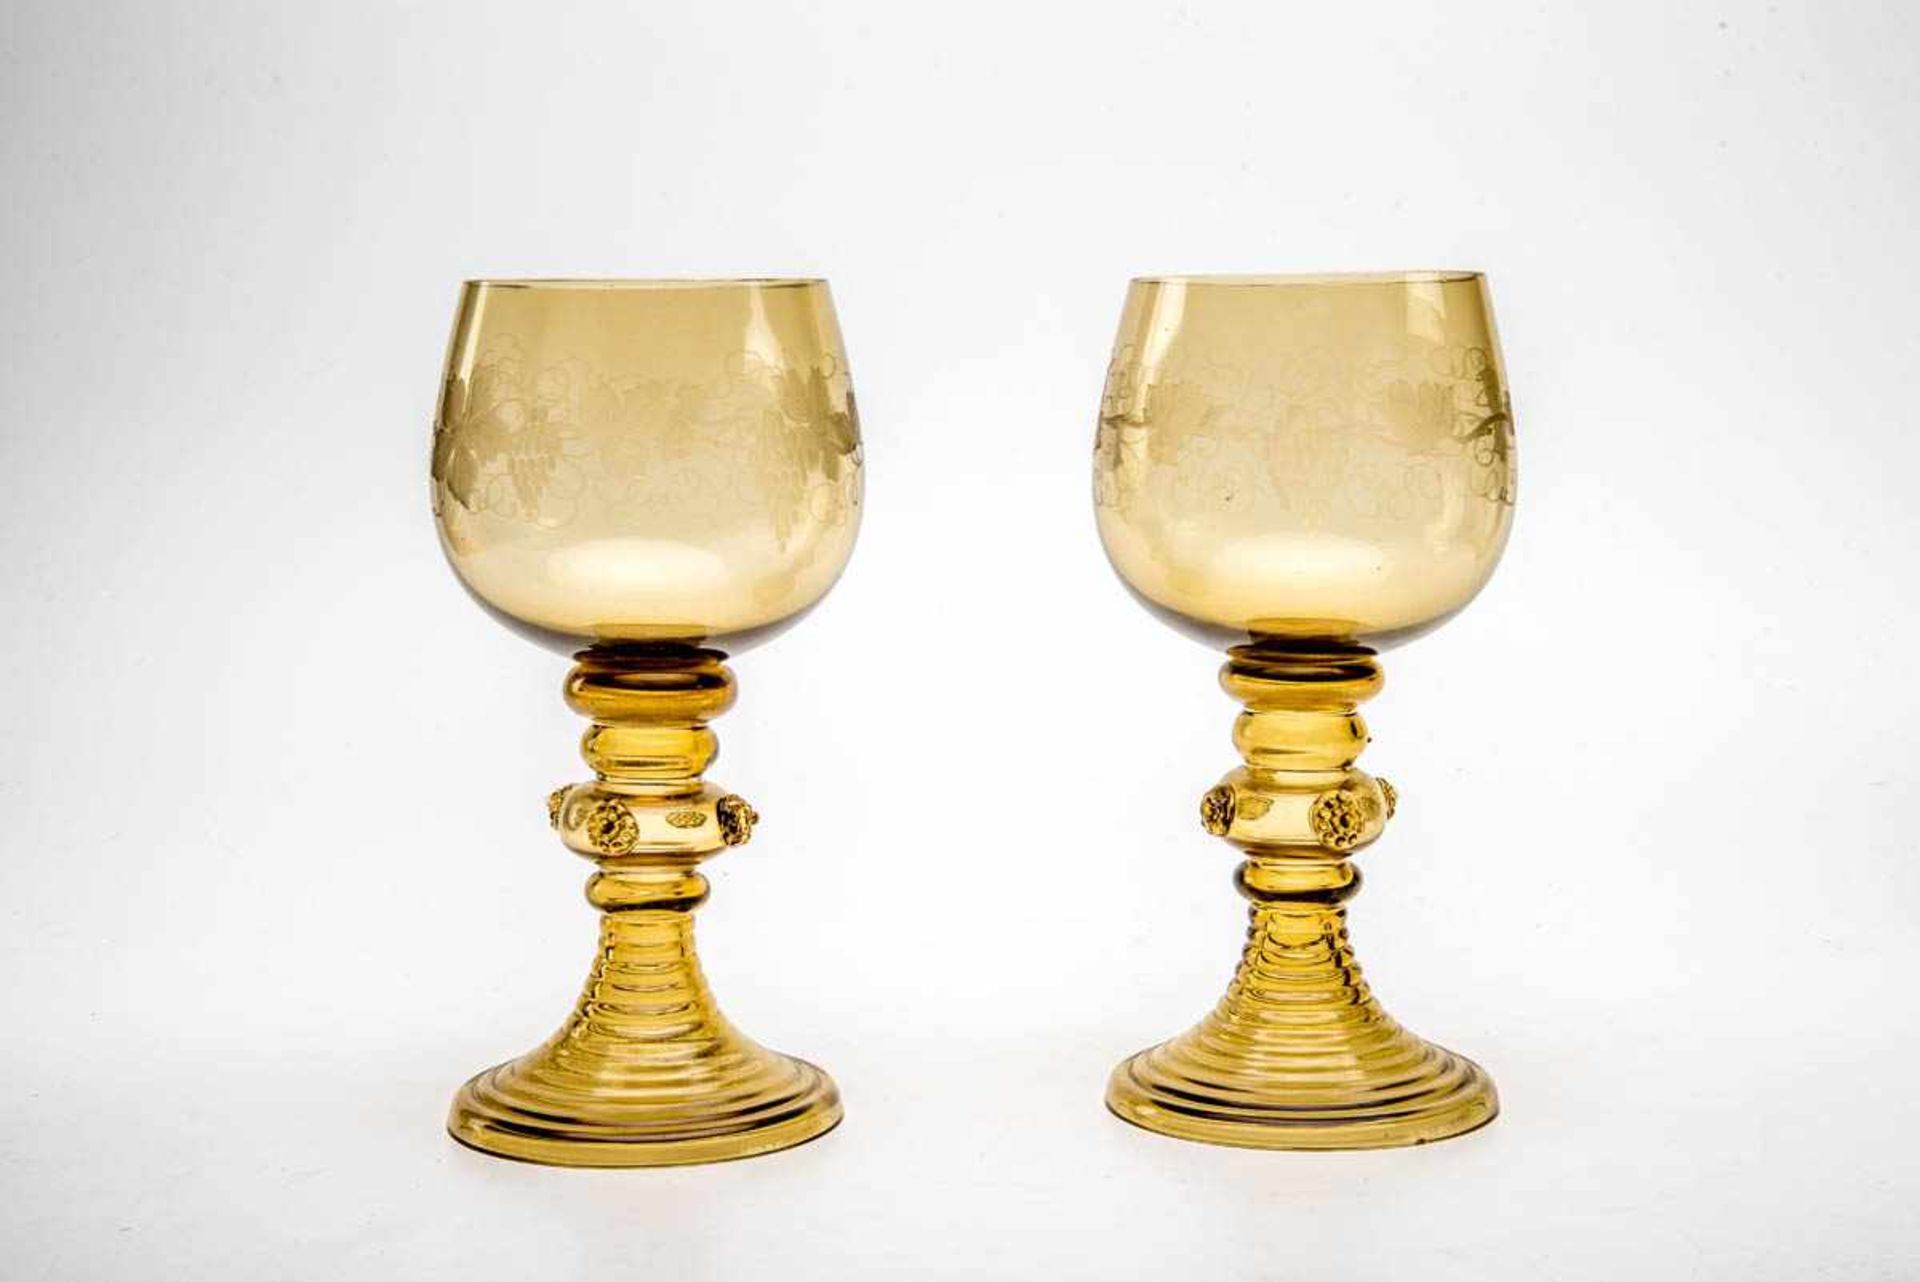 Paar Weinrömer, Böhmen um 1930 Bräunliches Glas. Runder spiralig gedrehter Hohlfuß, kugeliger hohler